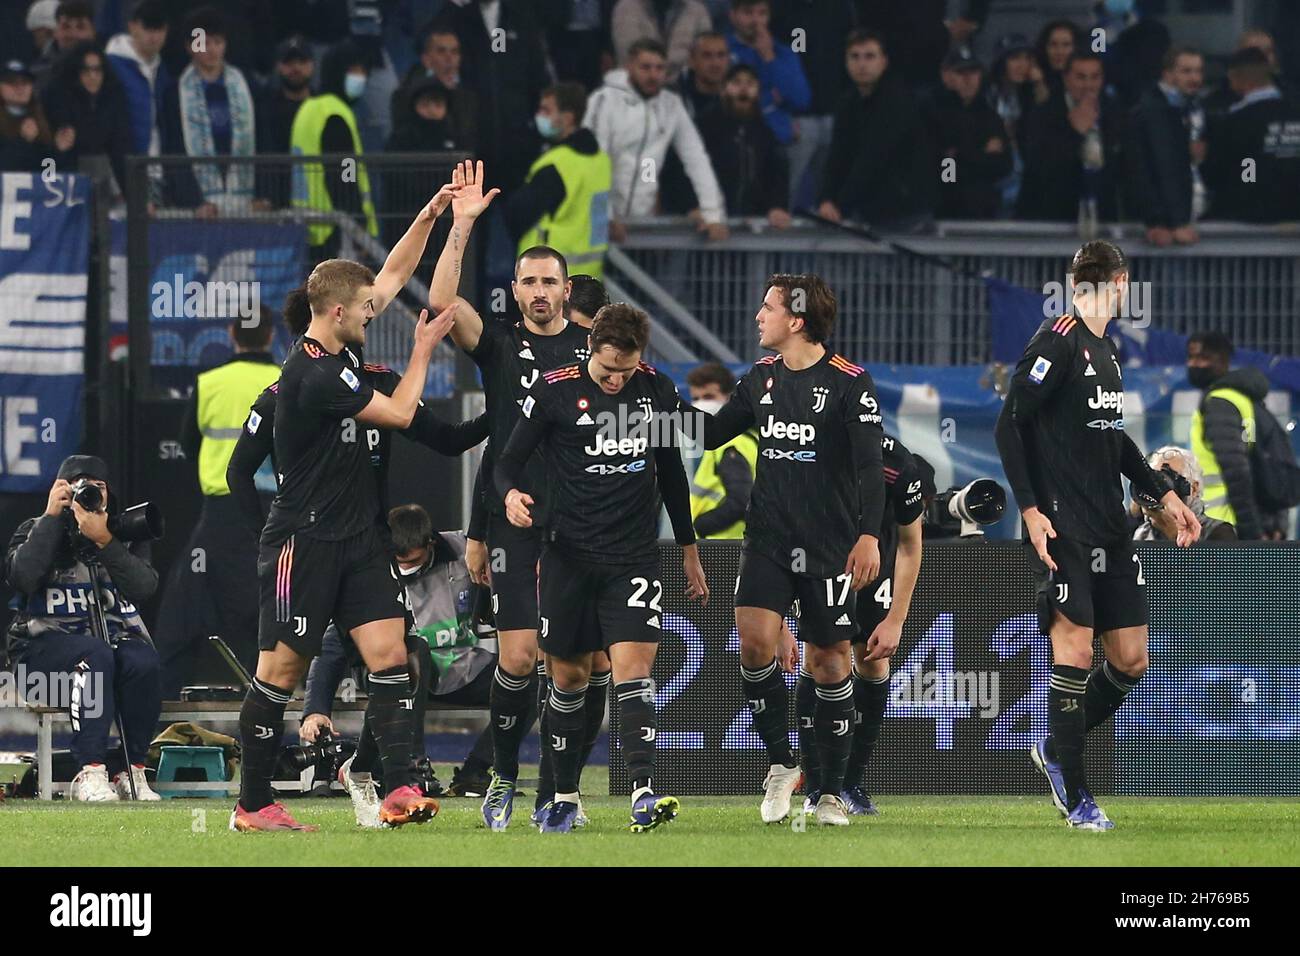 Il difensore italiano della Juventus, Leonardo Bonucci, festeggia dopo aver segnato un gol durante la Serie Una partita di calcio tra la SS Lazio e la Juventus allo Stadio Olimpico di Roma, centro Italia, il 20 novembre 2021. Foto Stock